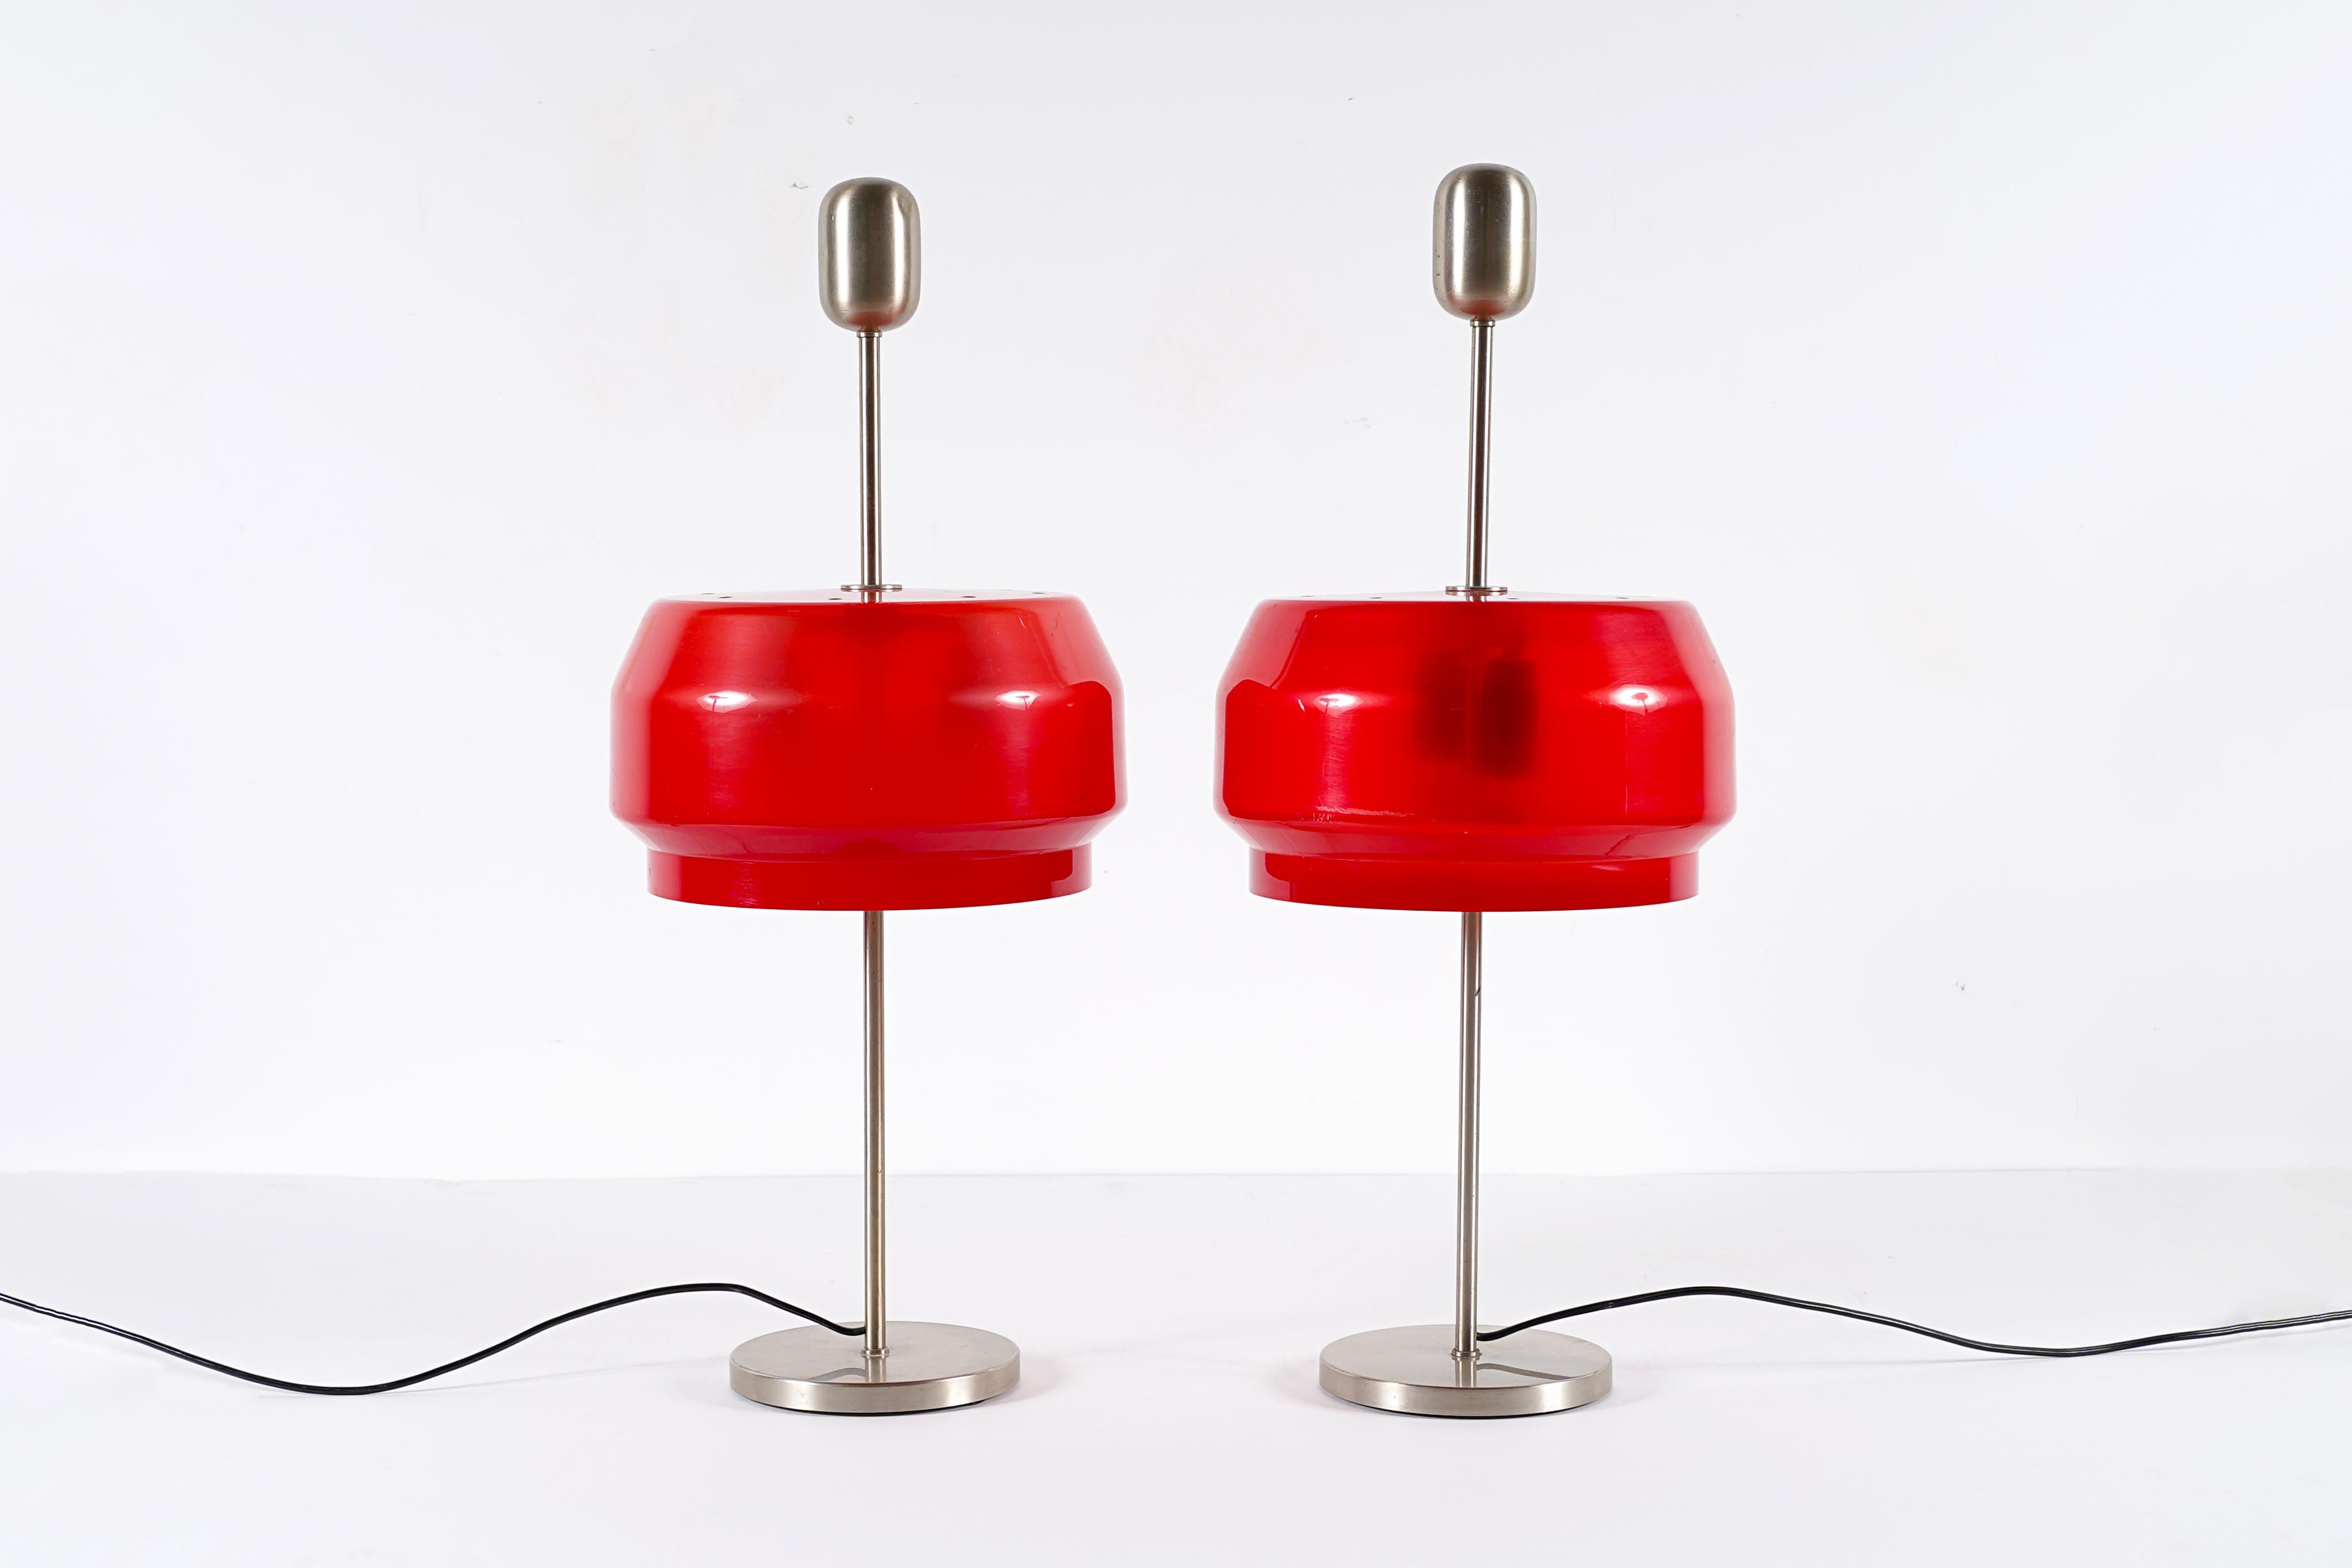 Rare paire de lampes modèle KD 9 conçue par Gianemilio Piero et Anna Montys /  Studio G.P.A. Montis pour Kartell, Italie, entre 1959 et 1969. Très bon état vintage. Ce modèle n'est plus produit actuellement. Il s'agit de l'une des premières lampes